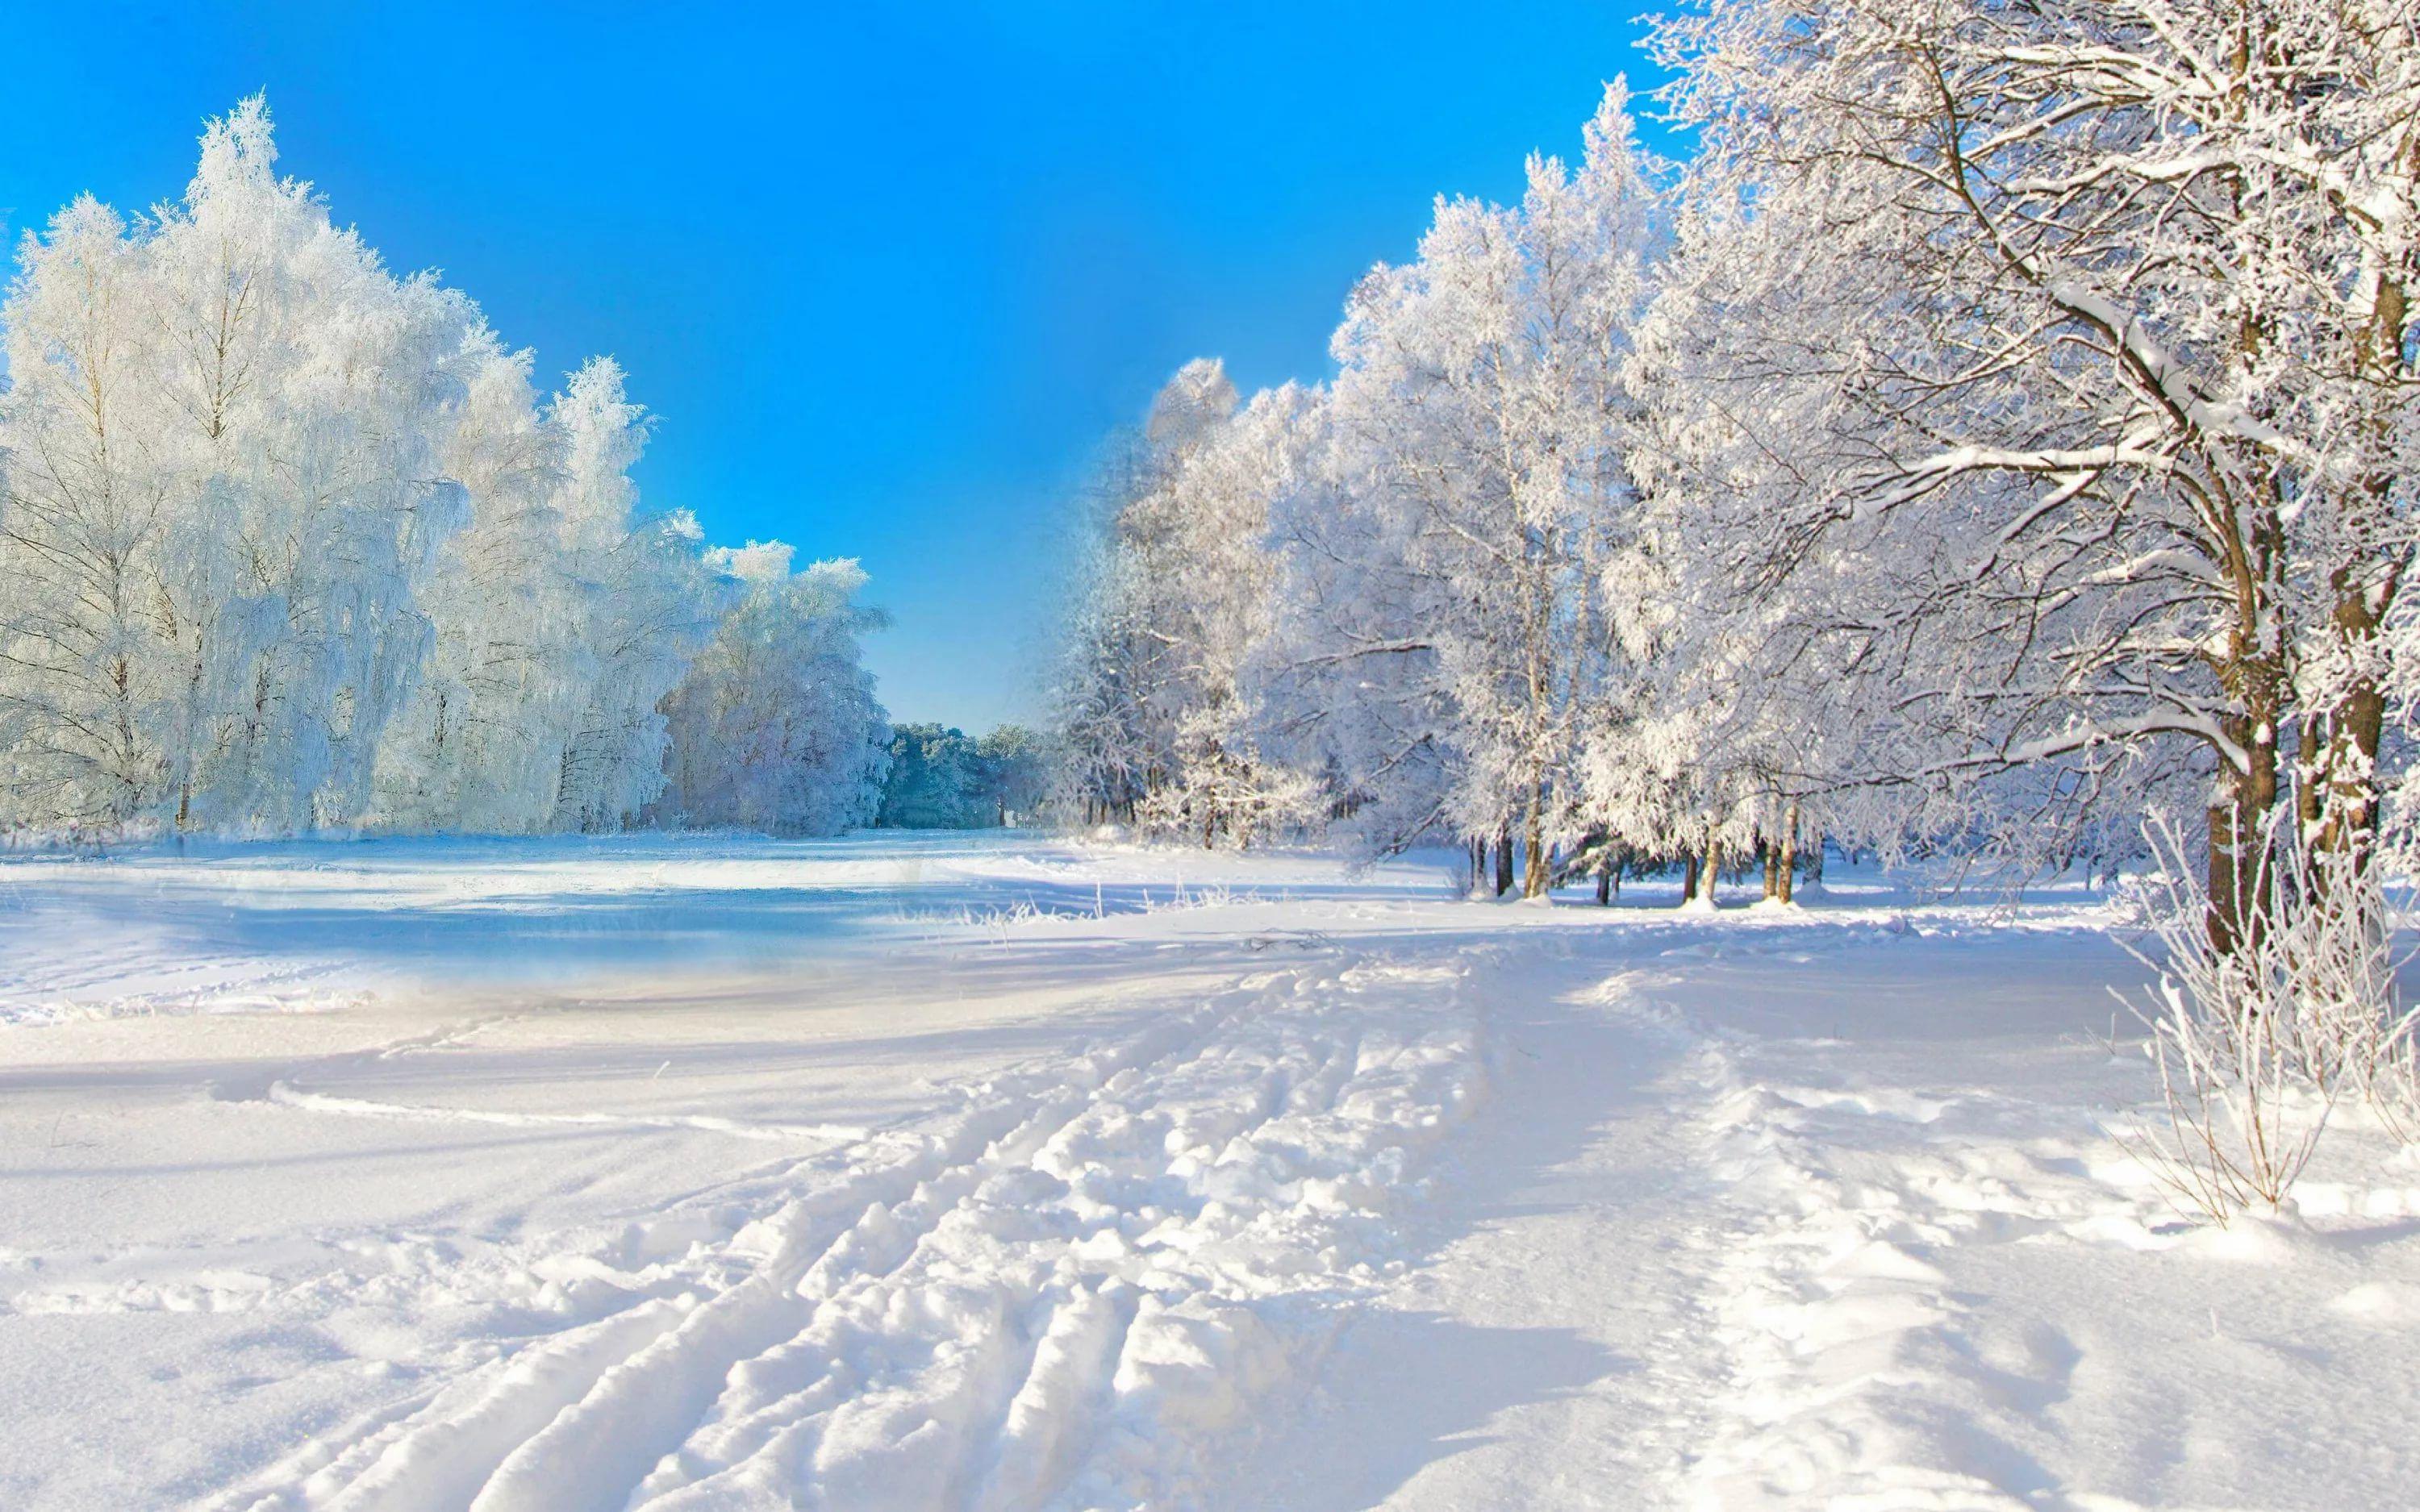 заставка на экран компьютера зима: 13 тыс изображений найдено в  Яндекс.Картинках | Fotos invierno, Paisaje nieve, Paisaje invernal